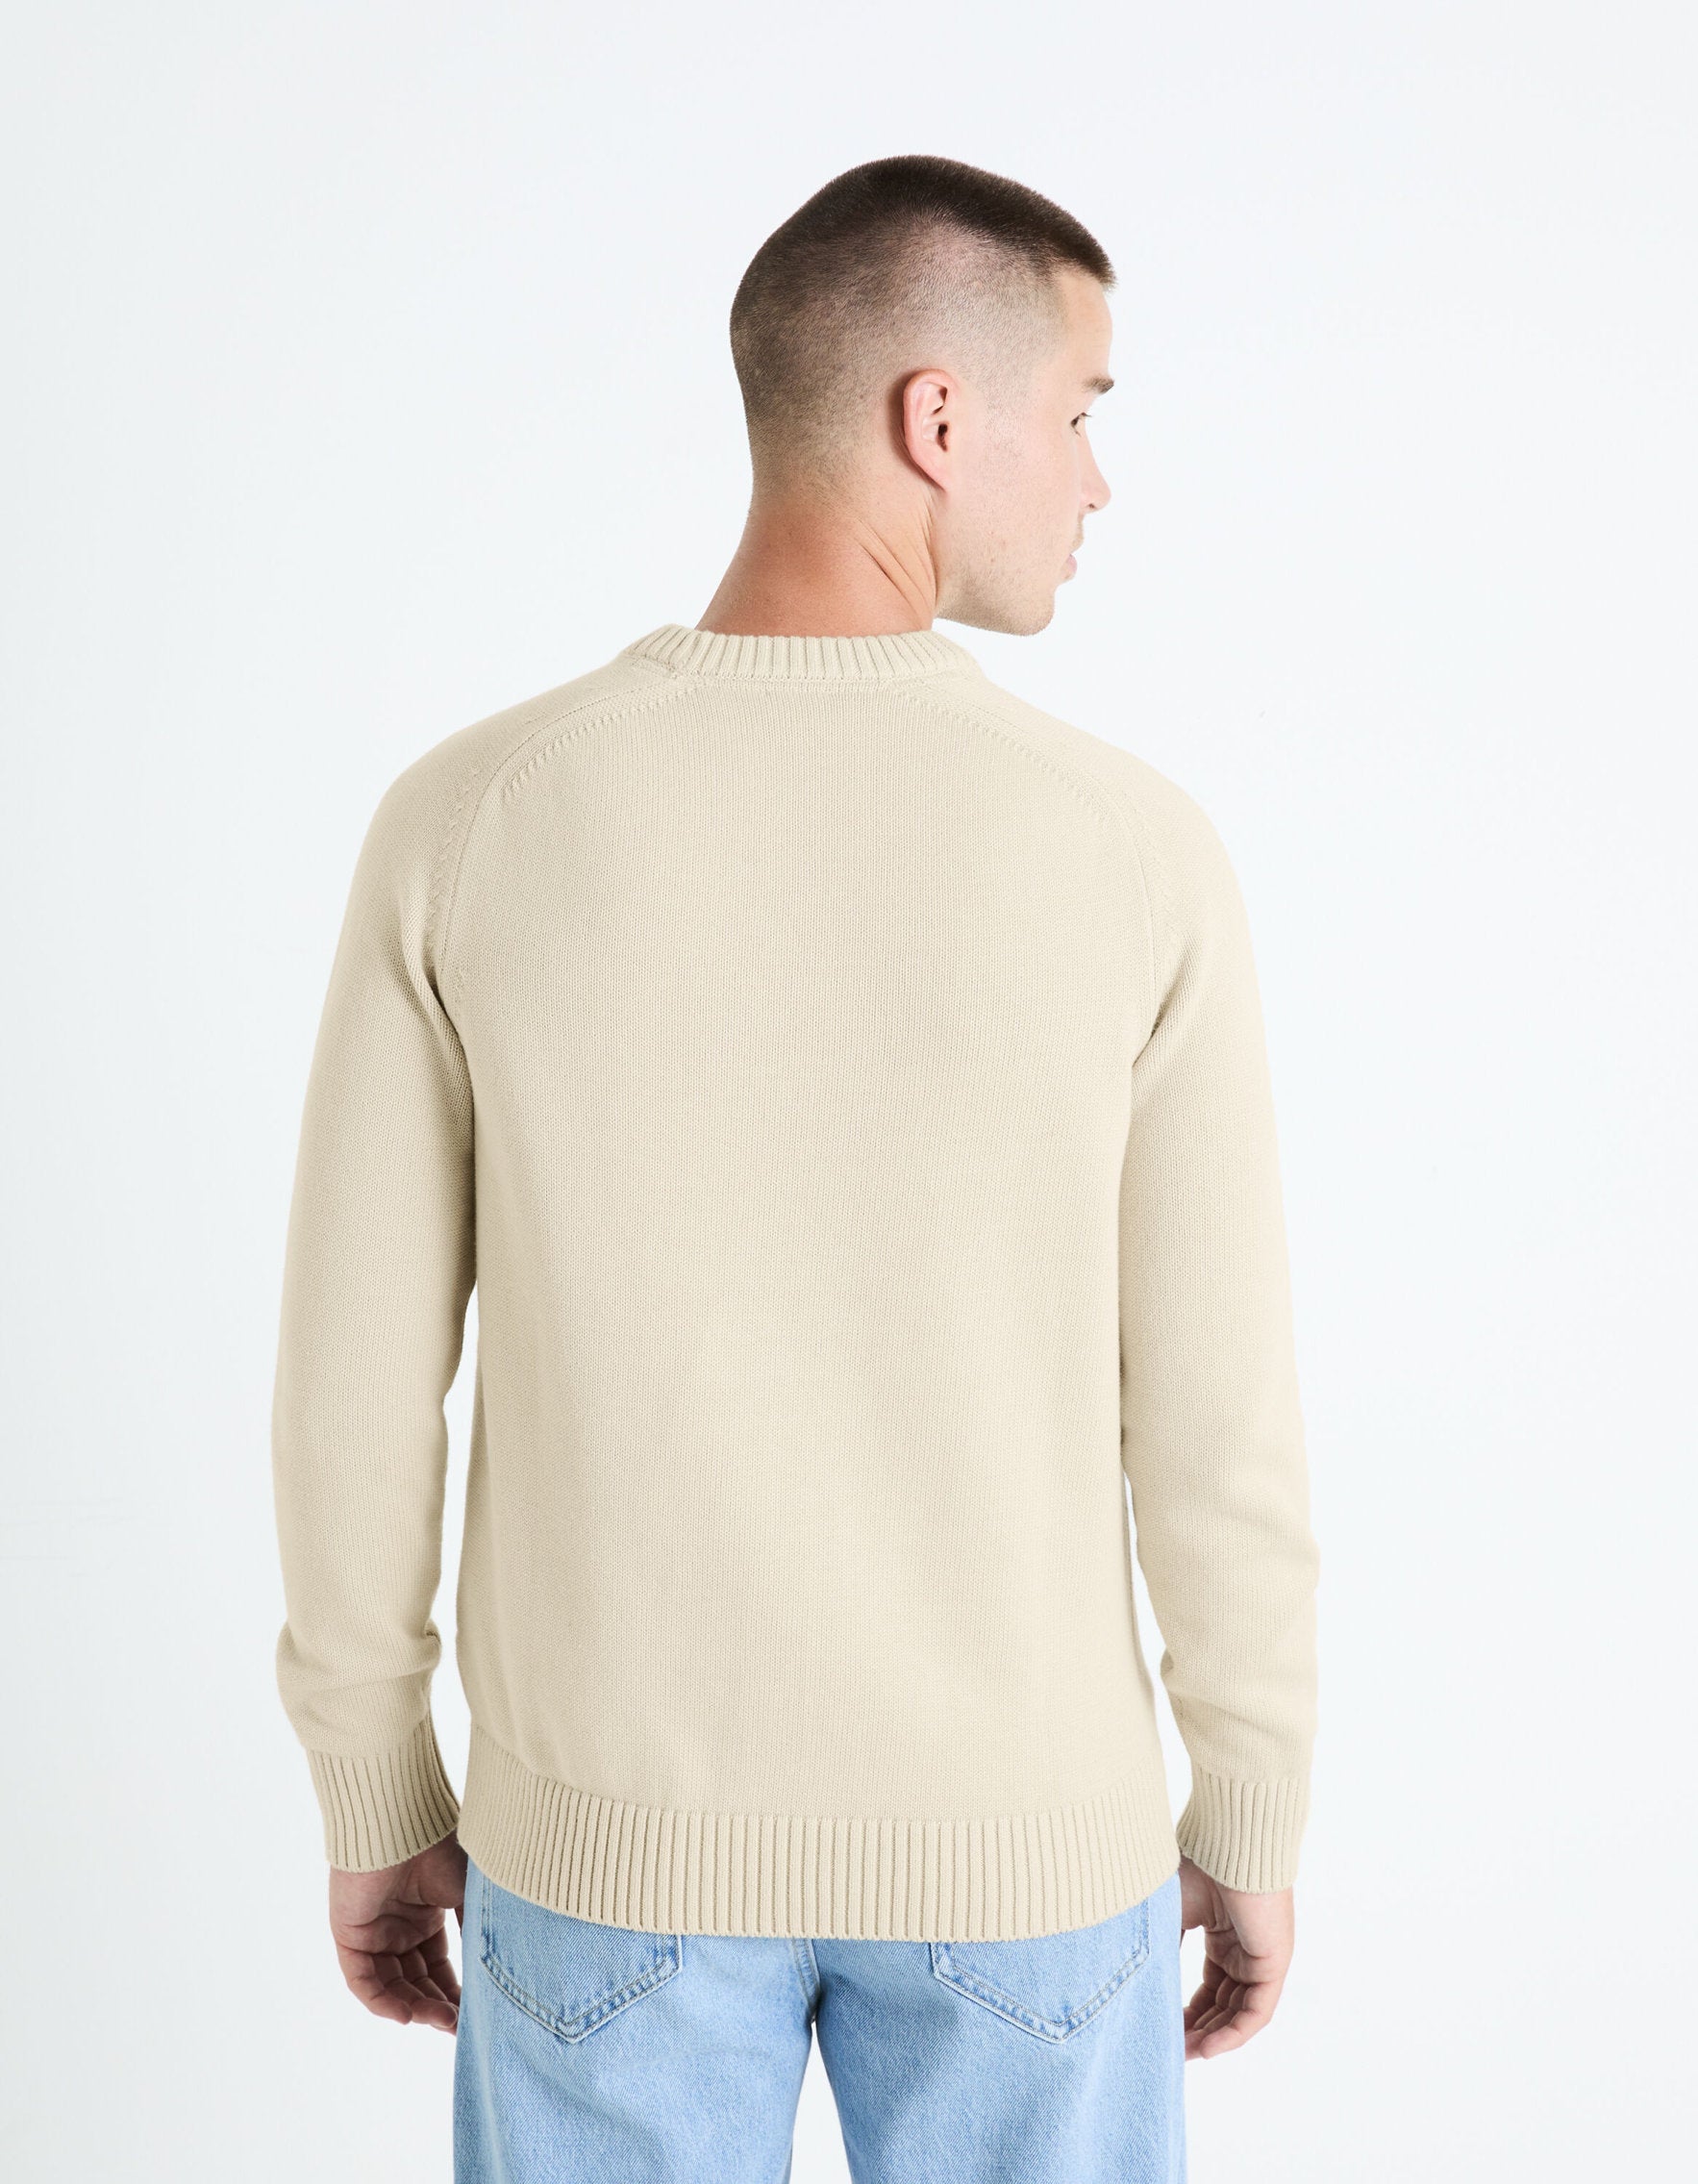 100% Cotton Round Neck Sweater - Beige_FEBASIC_LIGHT BEIGE_04